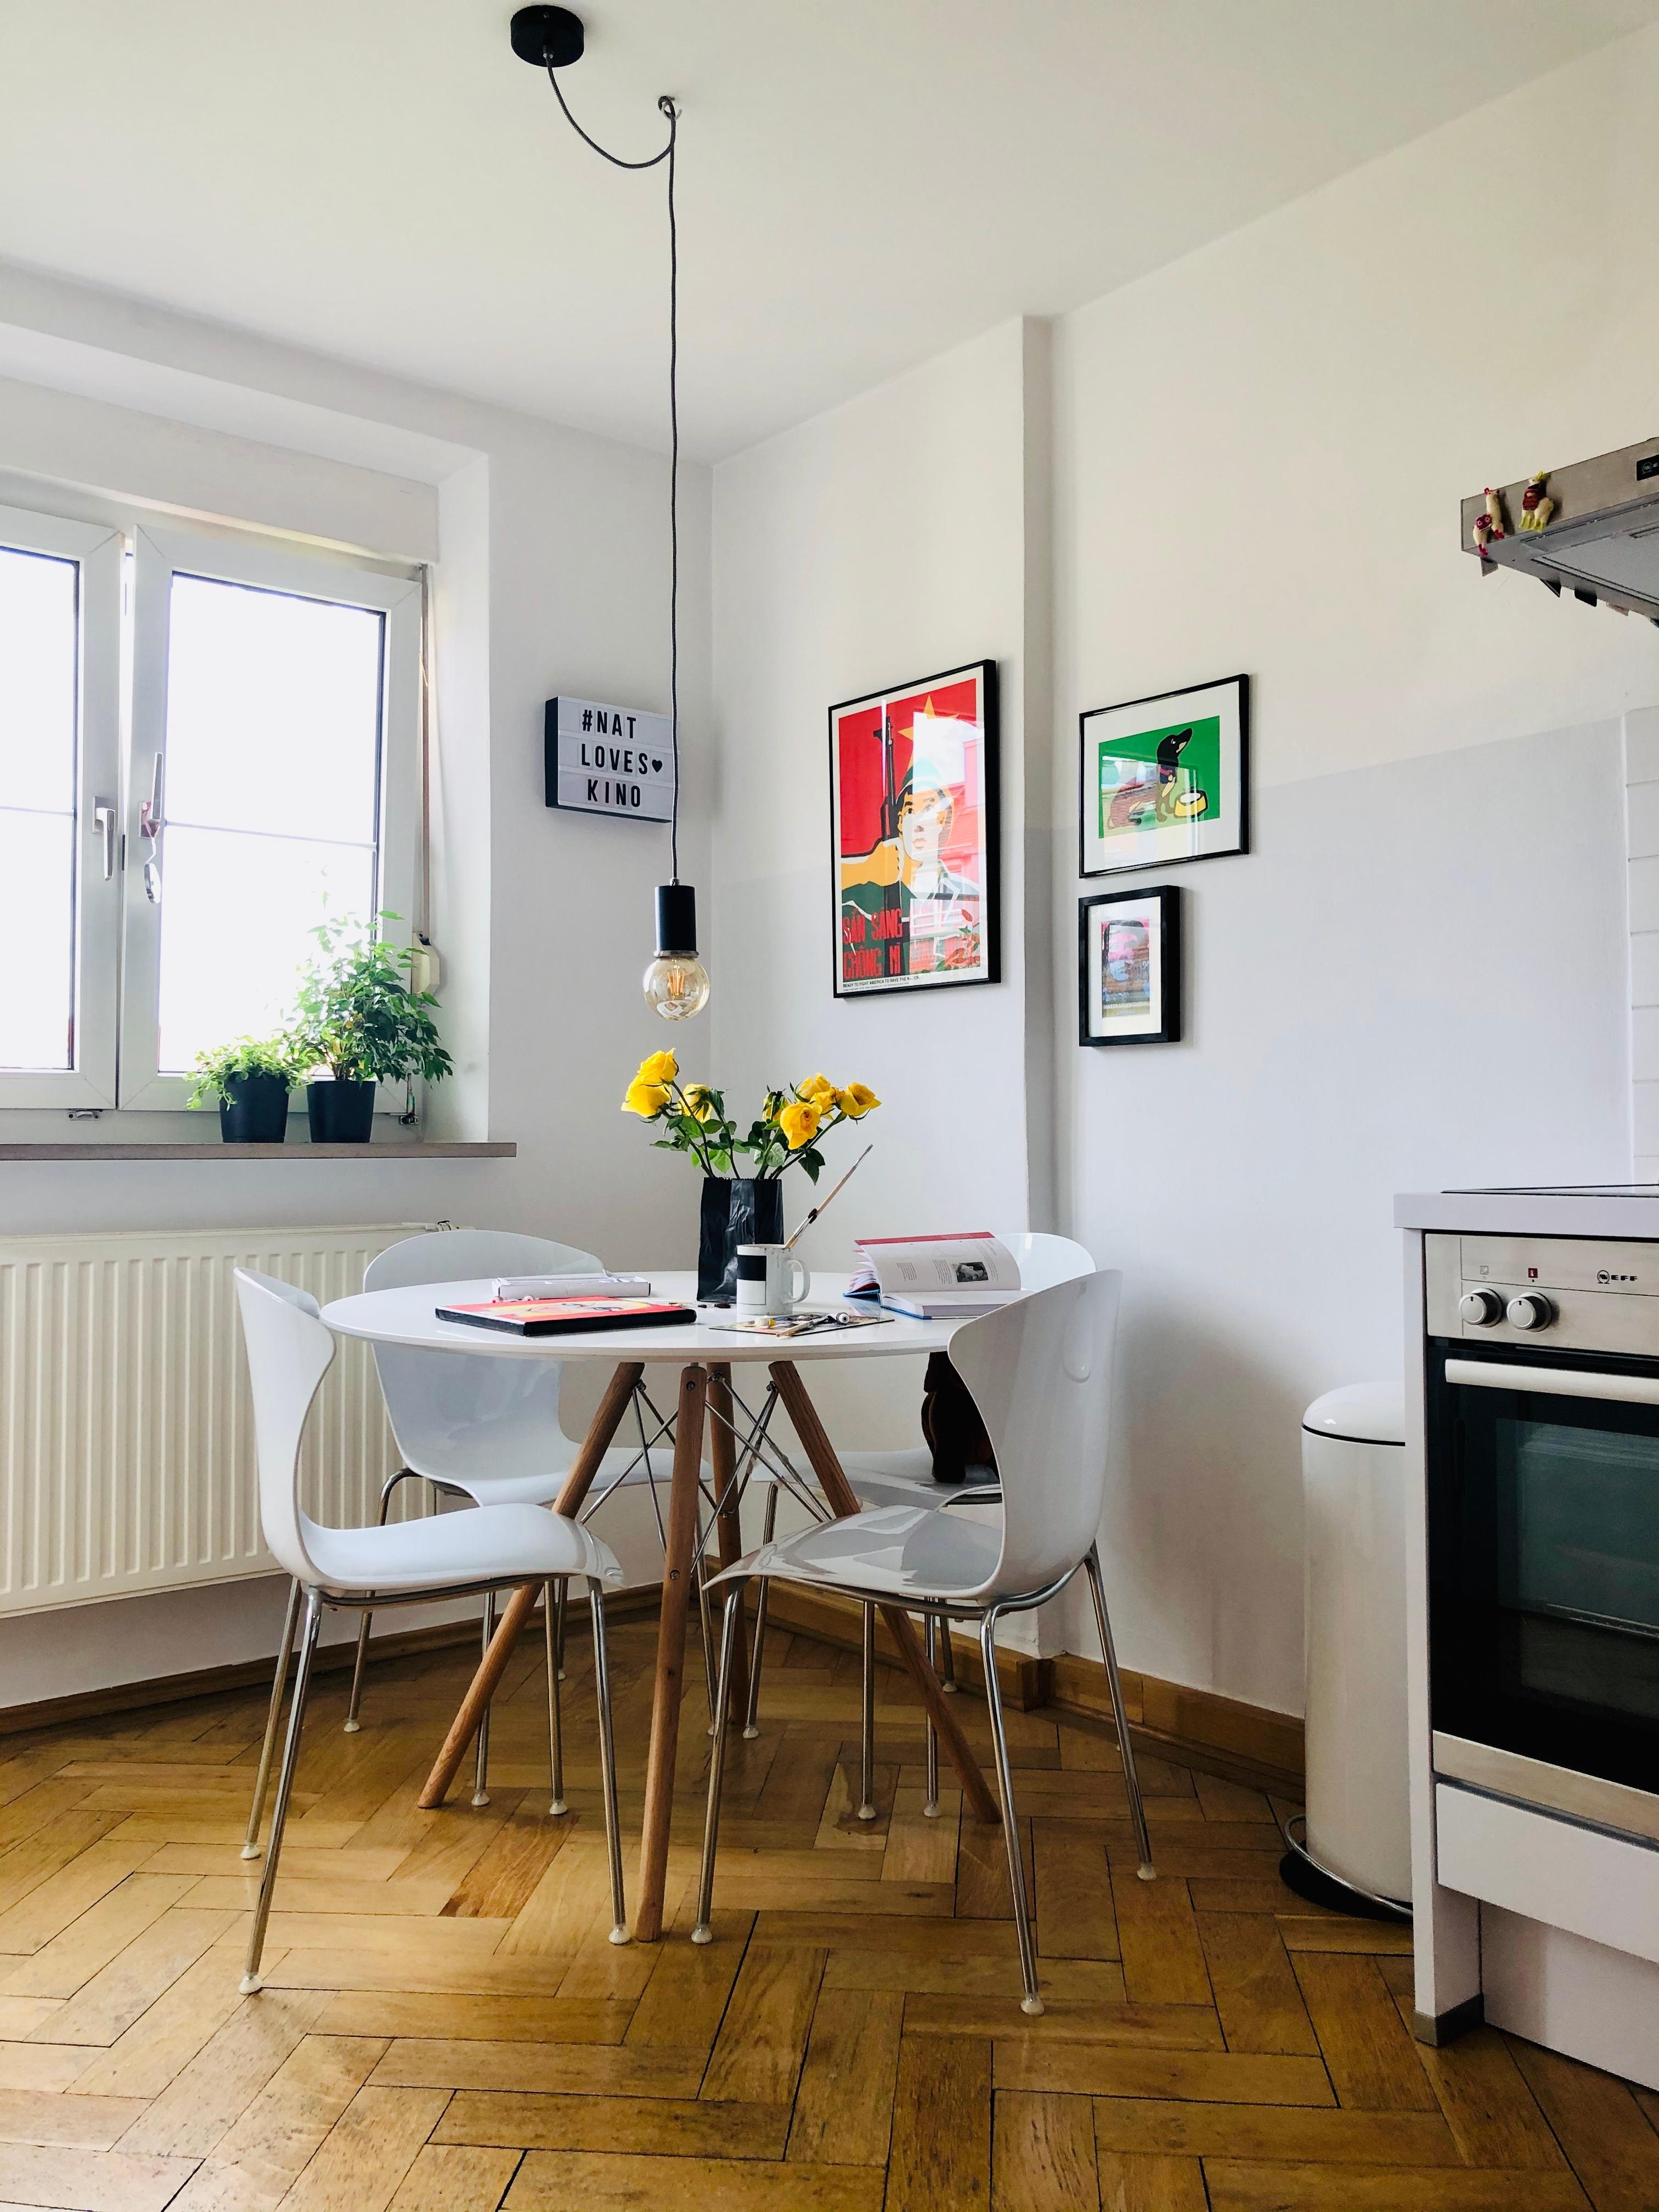 Neuer Küchentisch, neue Farbe ...
#kitchen #zartgrau #minimalistisch #altbau #simpleliving #artfromtheworld #diy